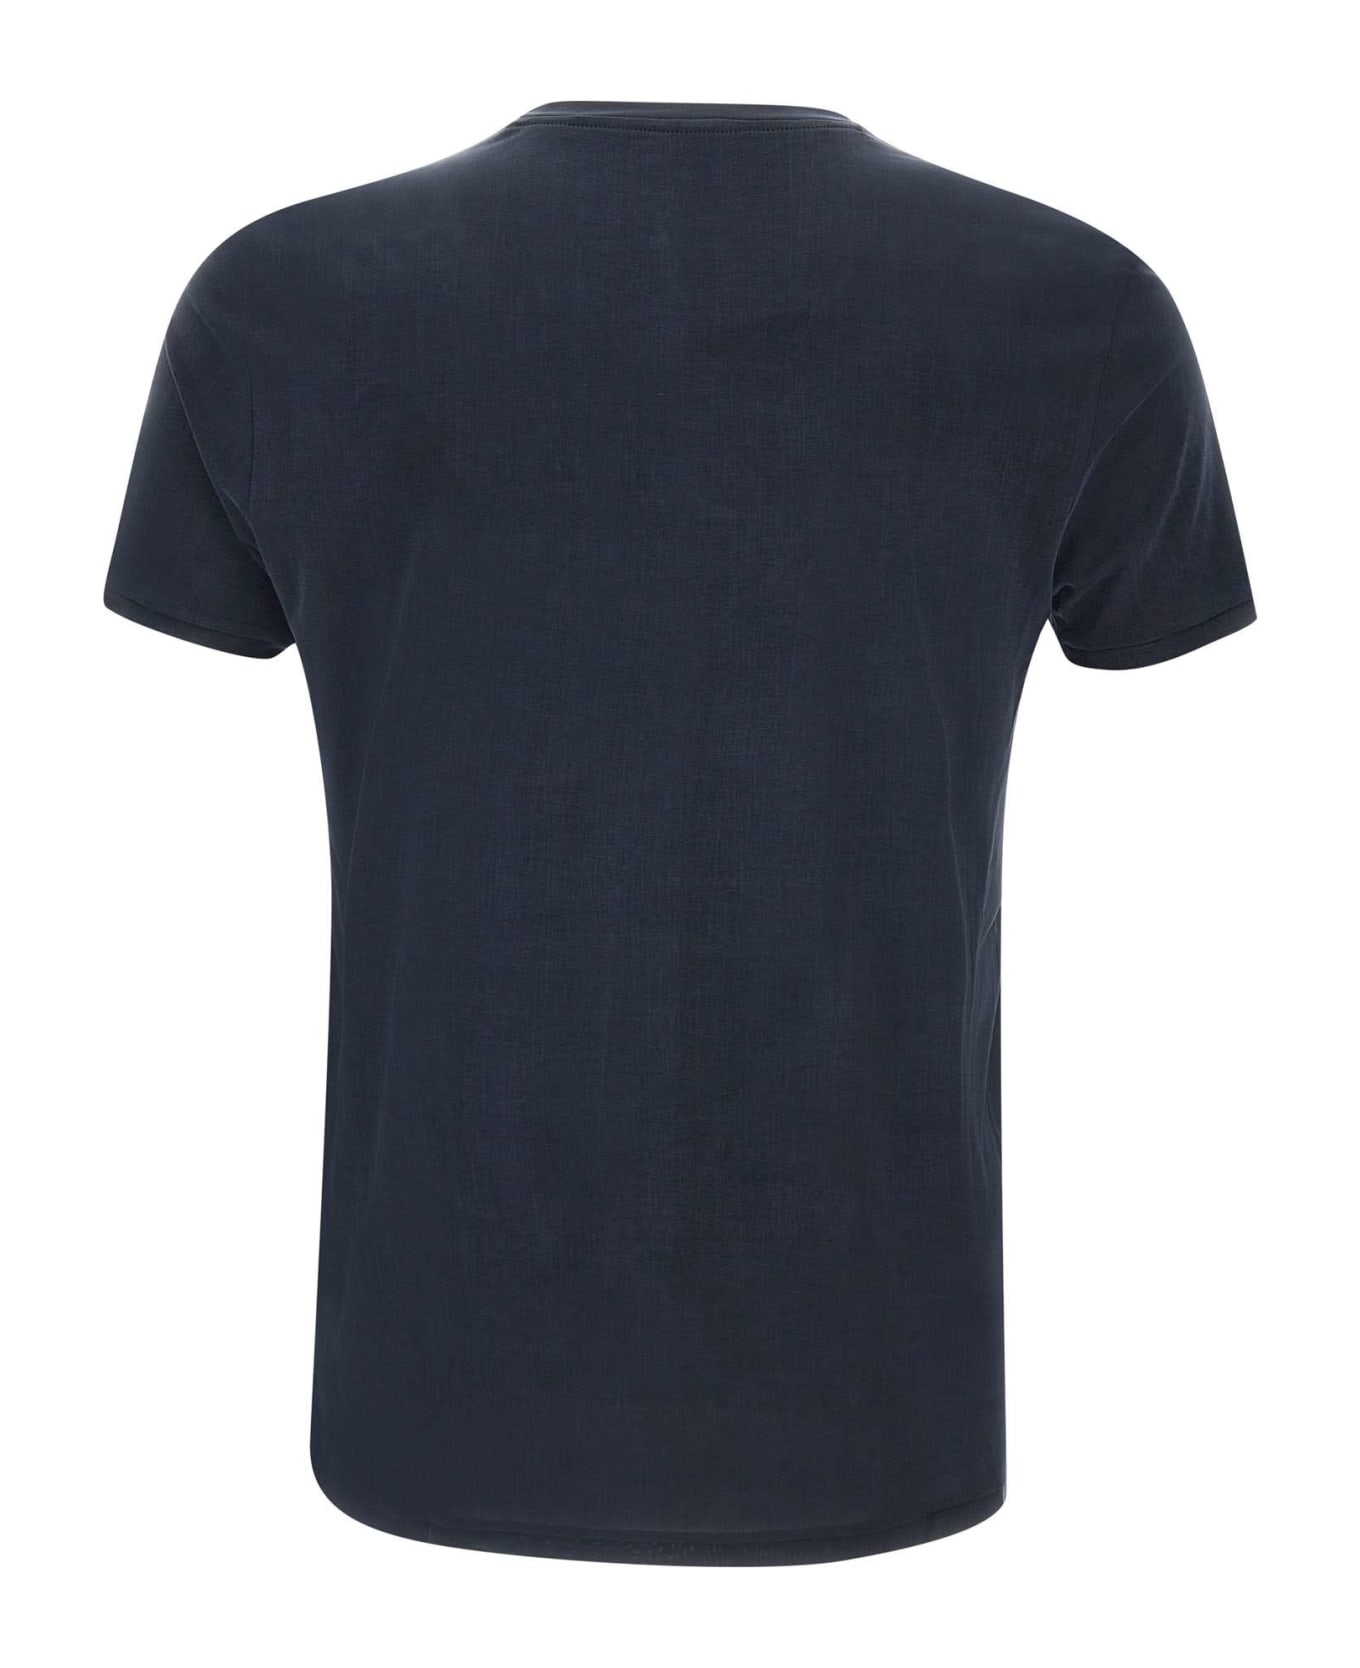 RRD - Roberto Ricci Design 'cupro Shirty' T-shirt - Blue black